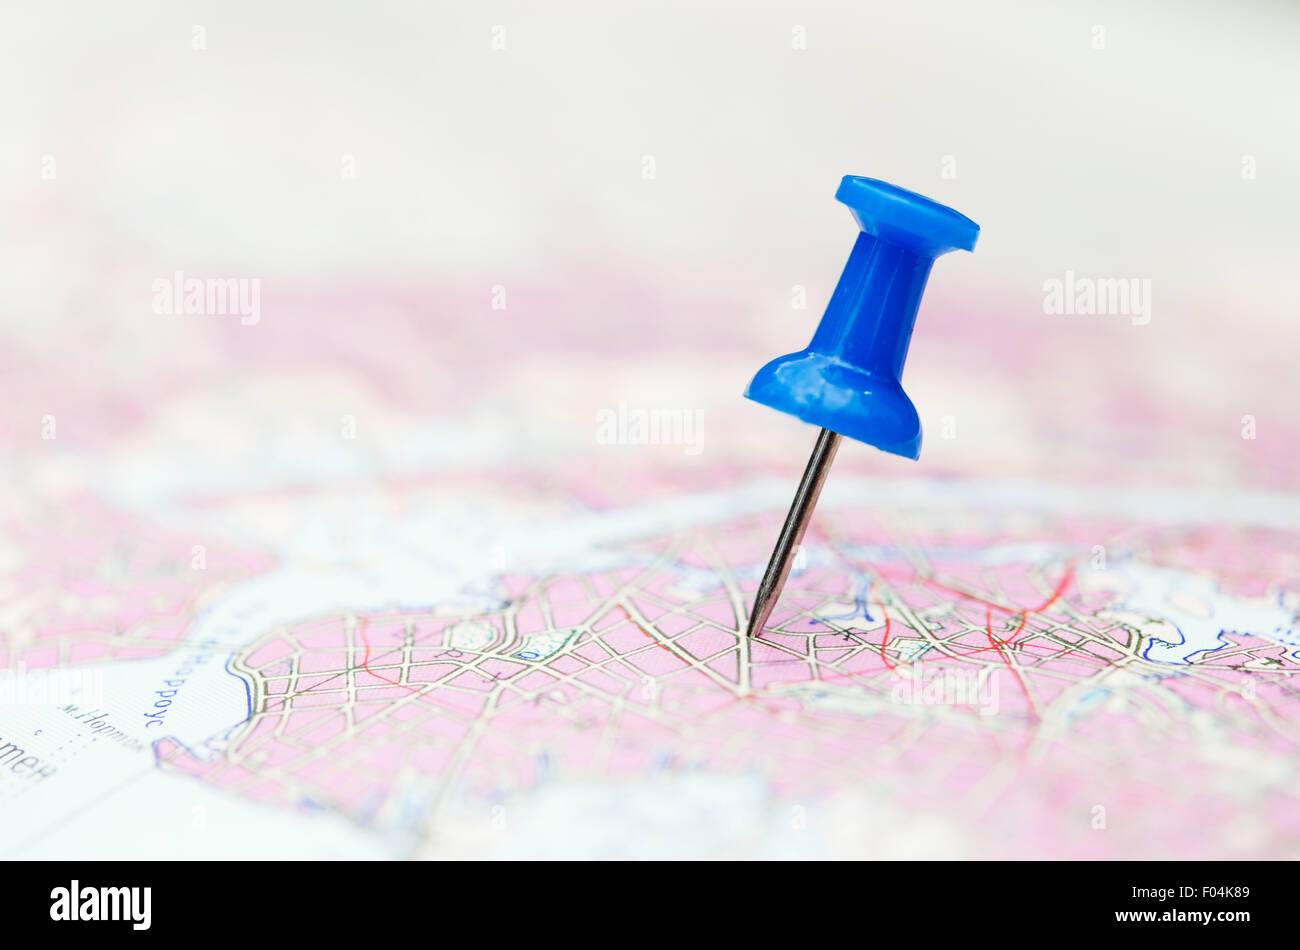 Reisen Sie Reiseziel, blaue Pin auf der Karte Stockfoto